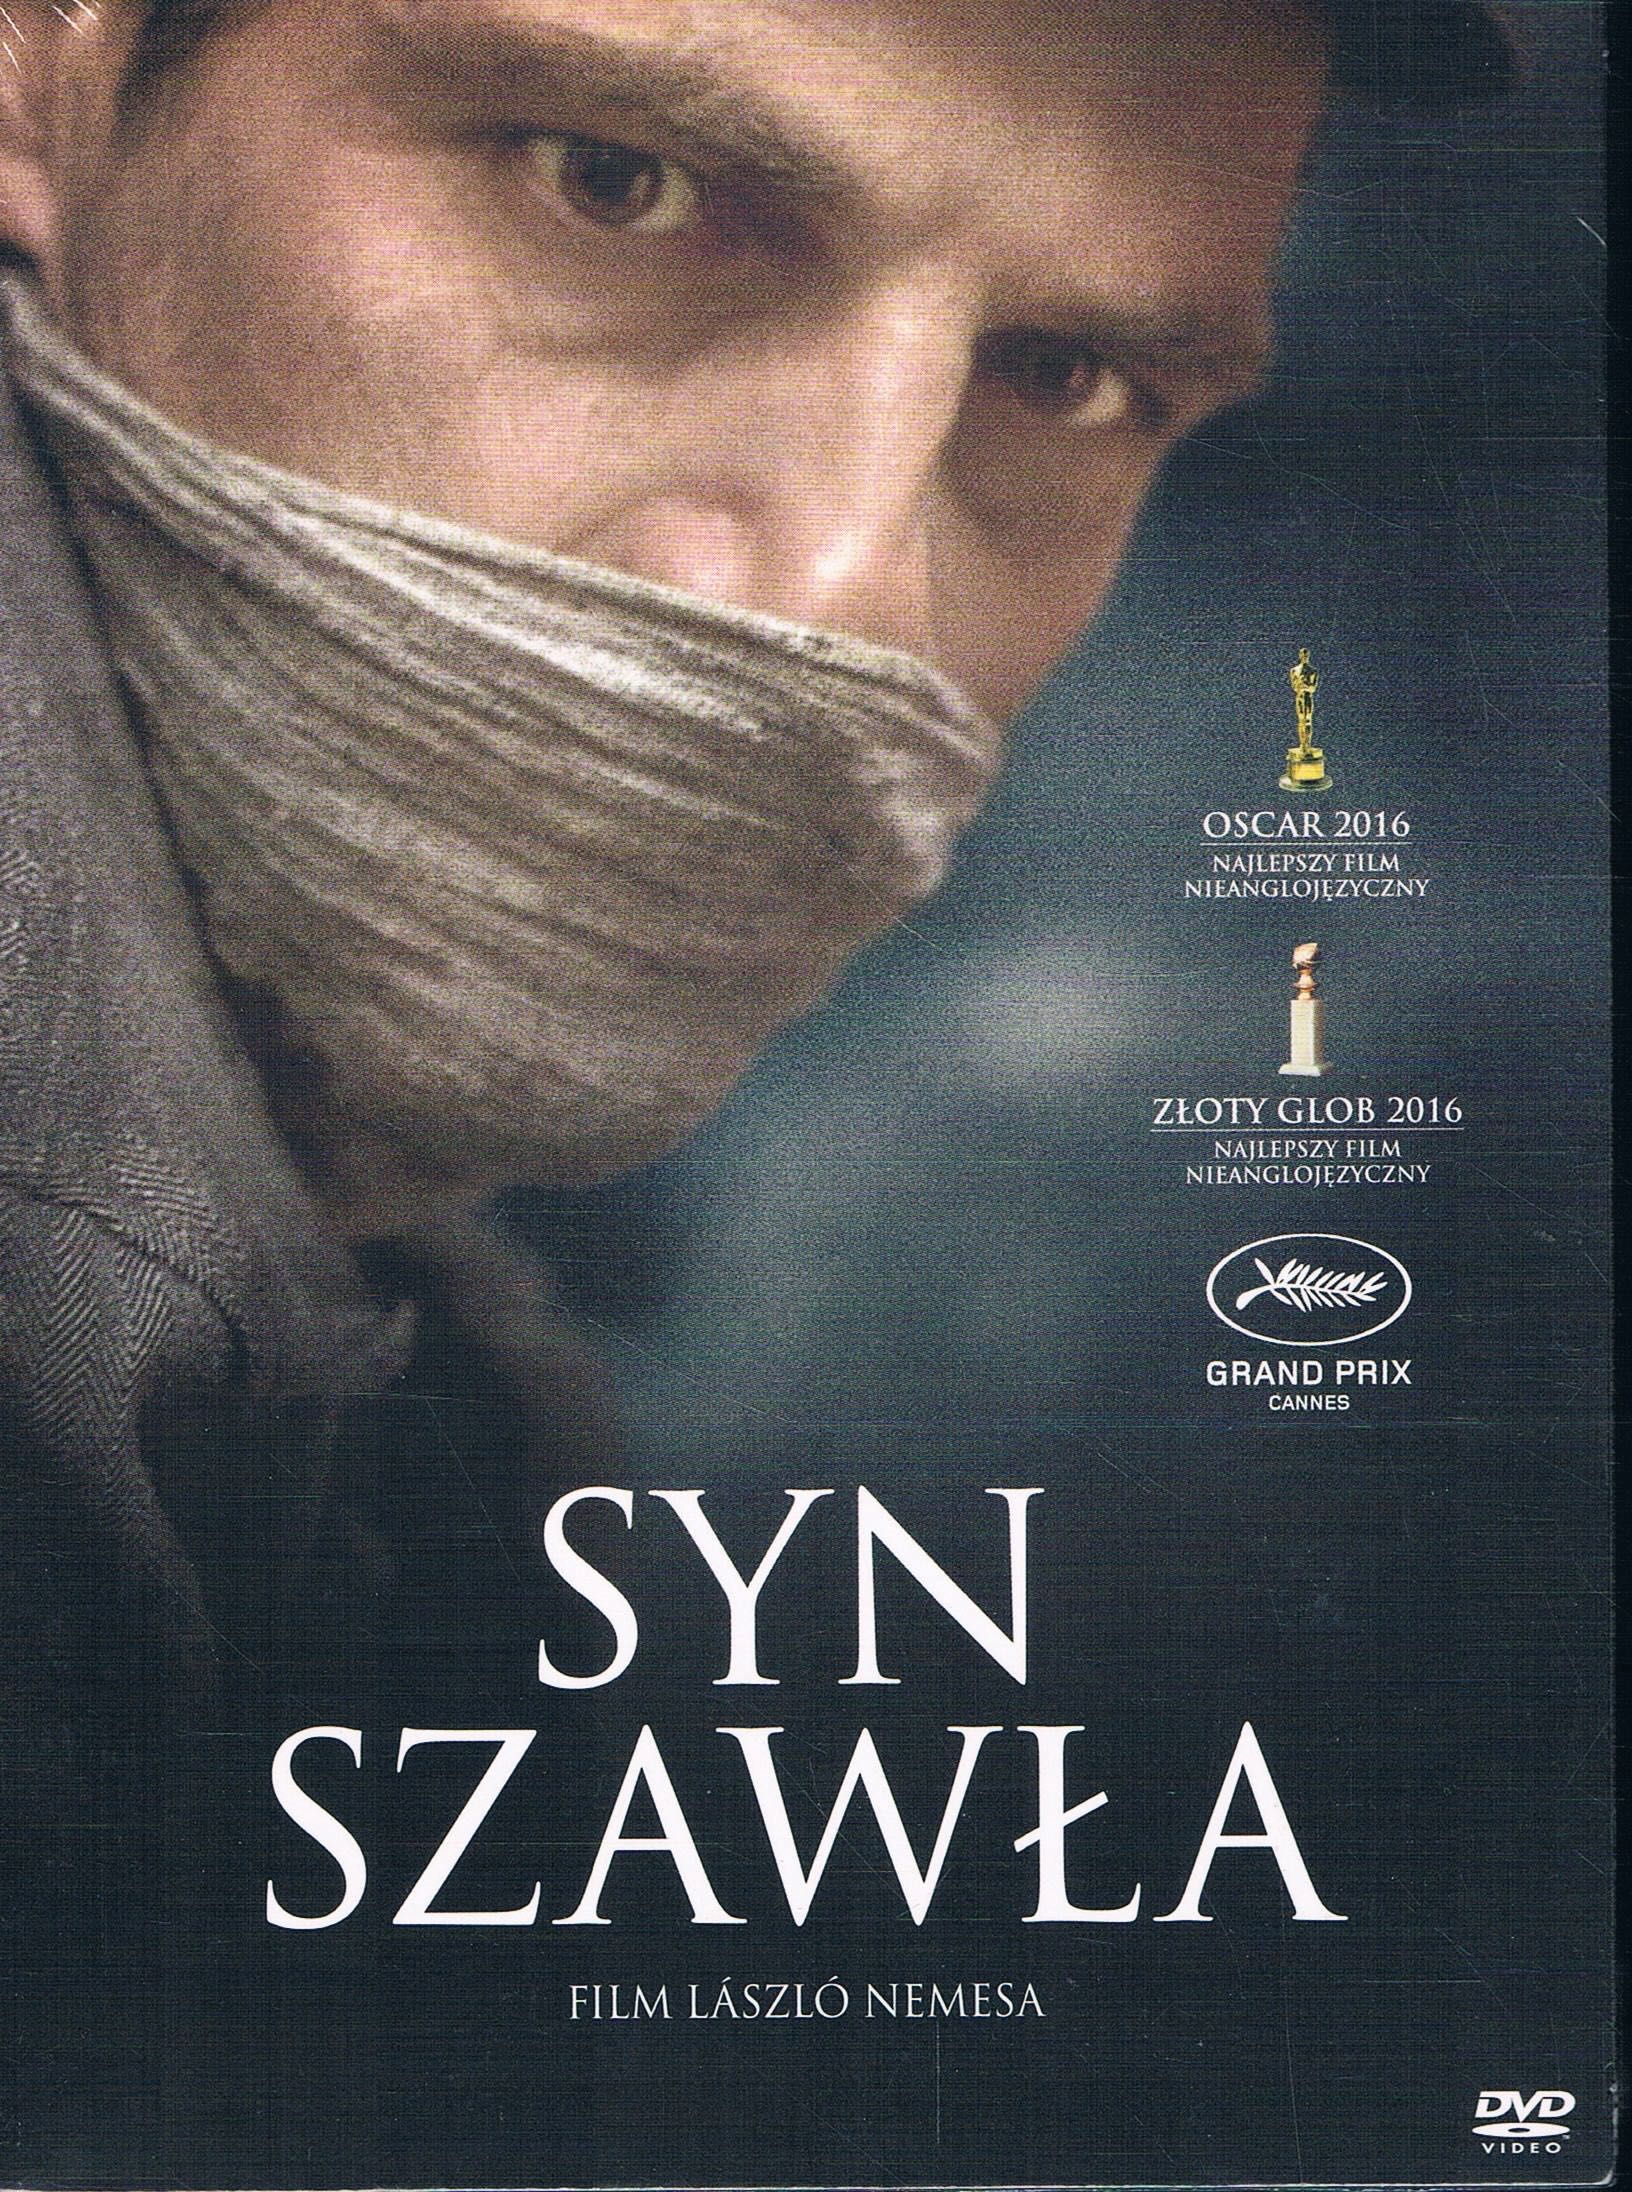 Syn Szawła (Film Laszlo Nemesa) DVD (Nowy w folii)